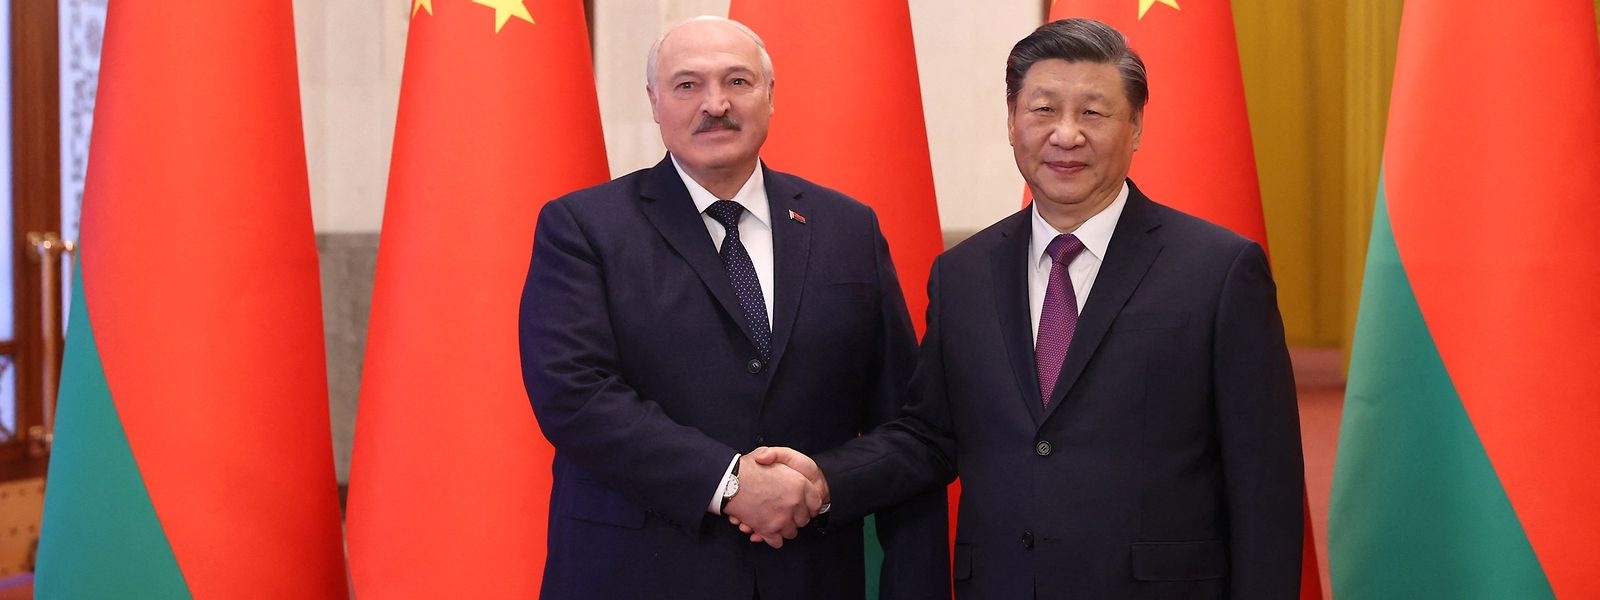 Die Freundschaft beider Staaten sei „unzerbrechlich“, sagte der chinesische Staats- und Parteichef Xi Jinping (r.) beim Treffen mit dem belarussischen Machthaber Alexander Lukaschenko in Peking.